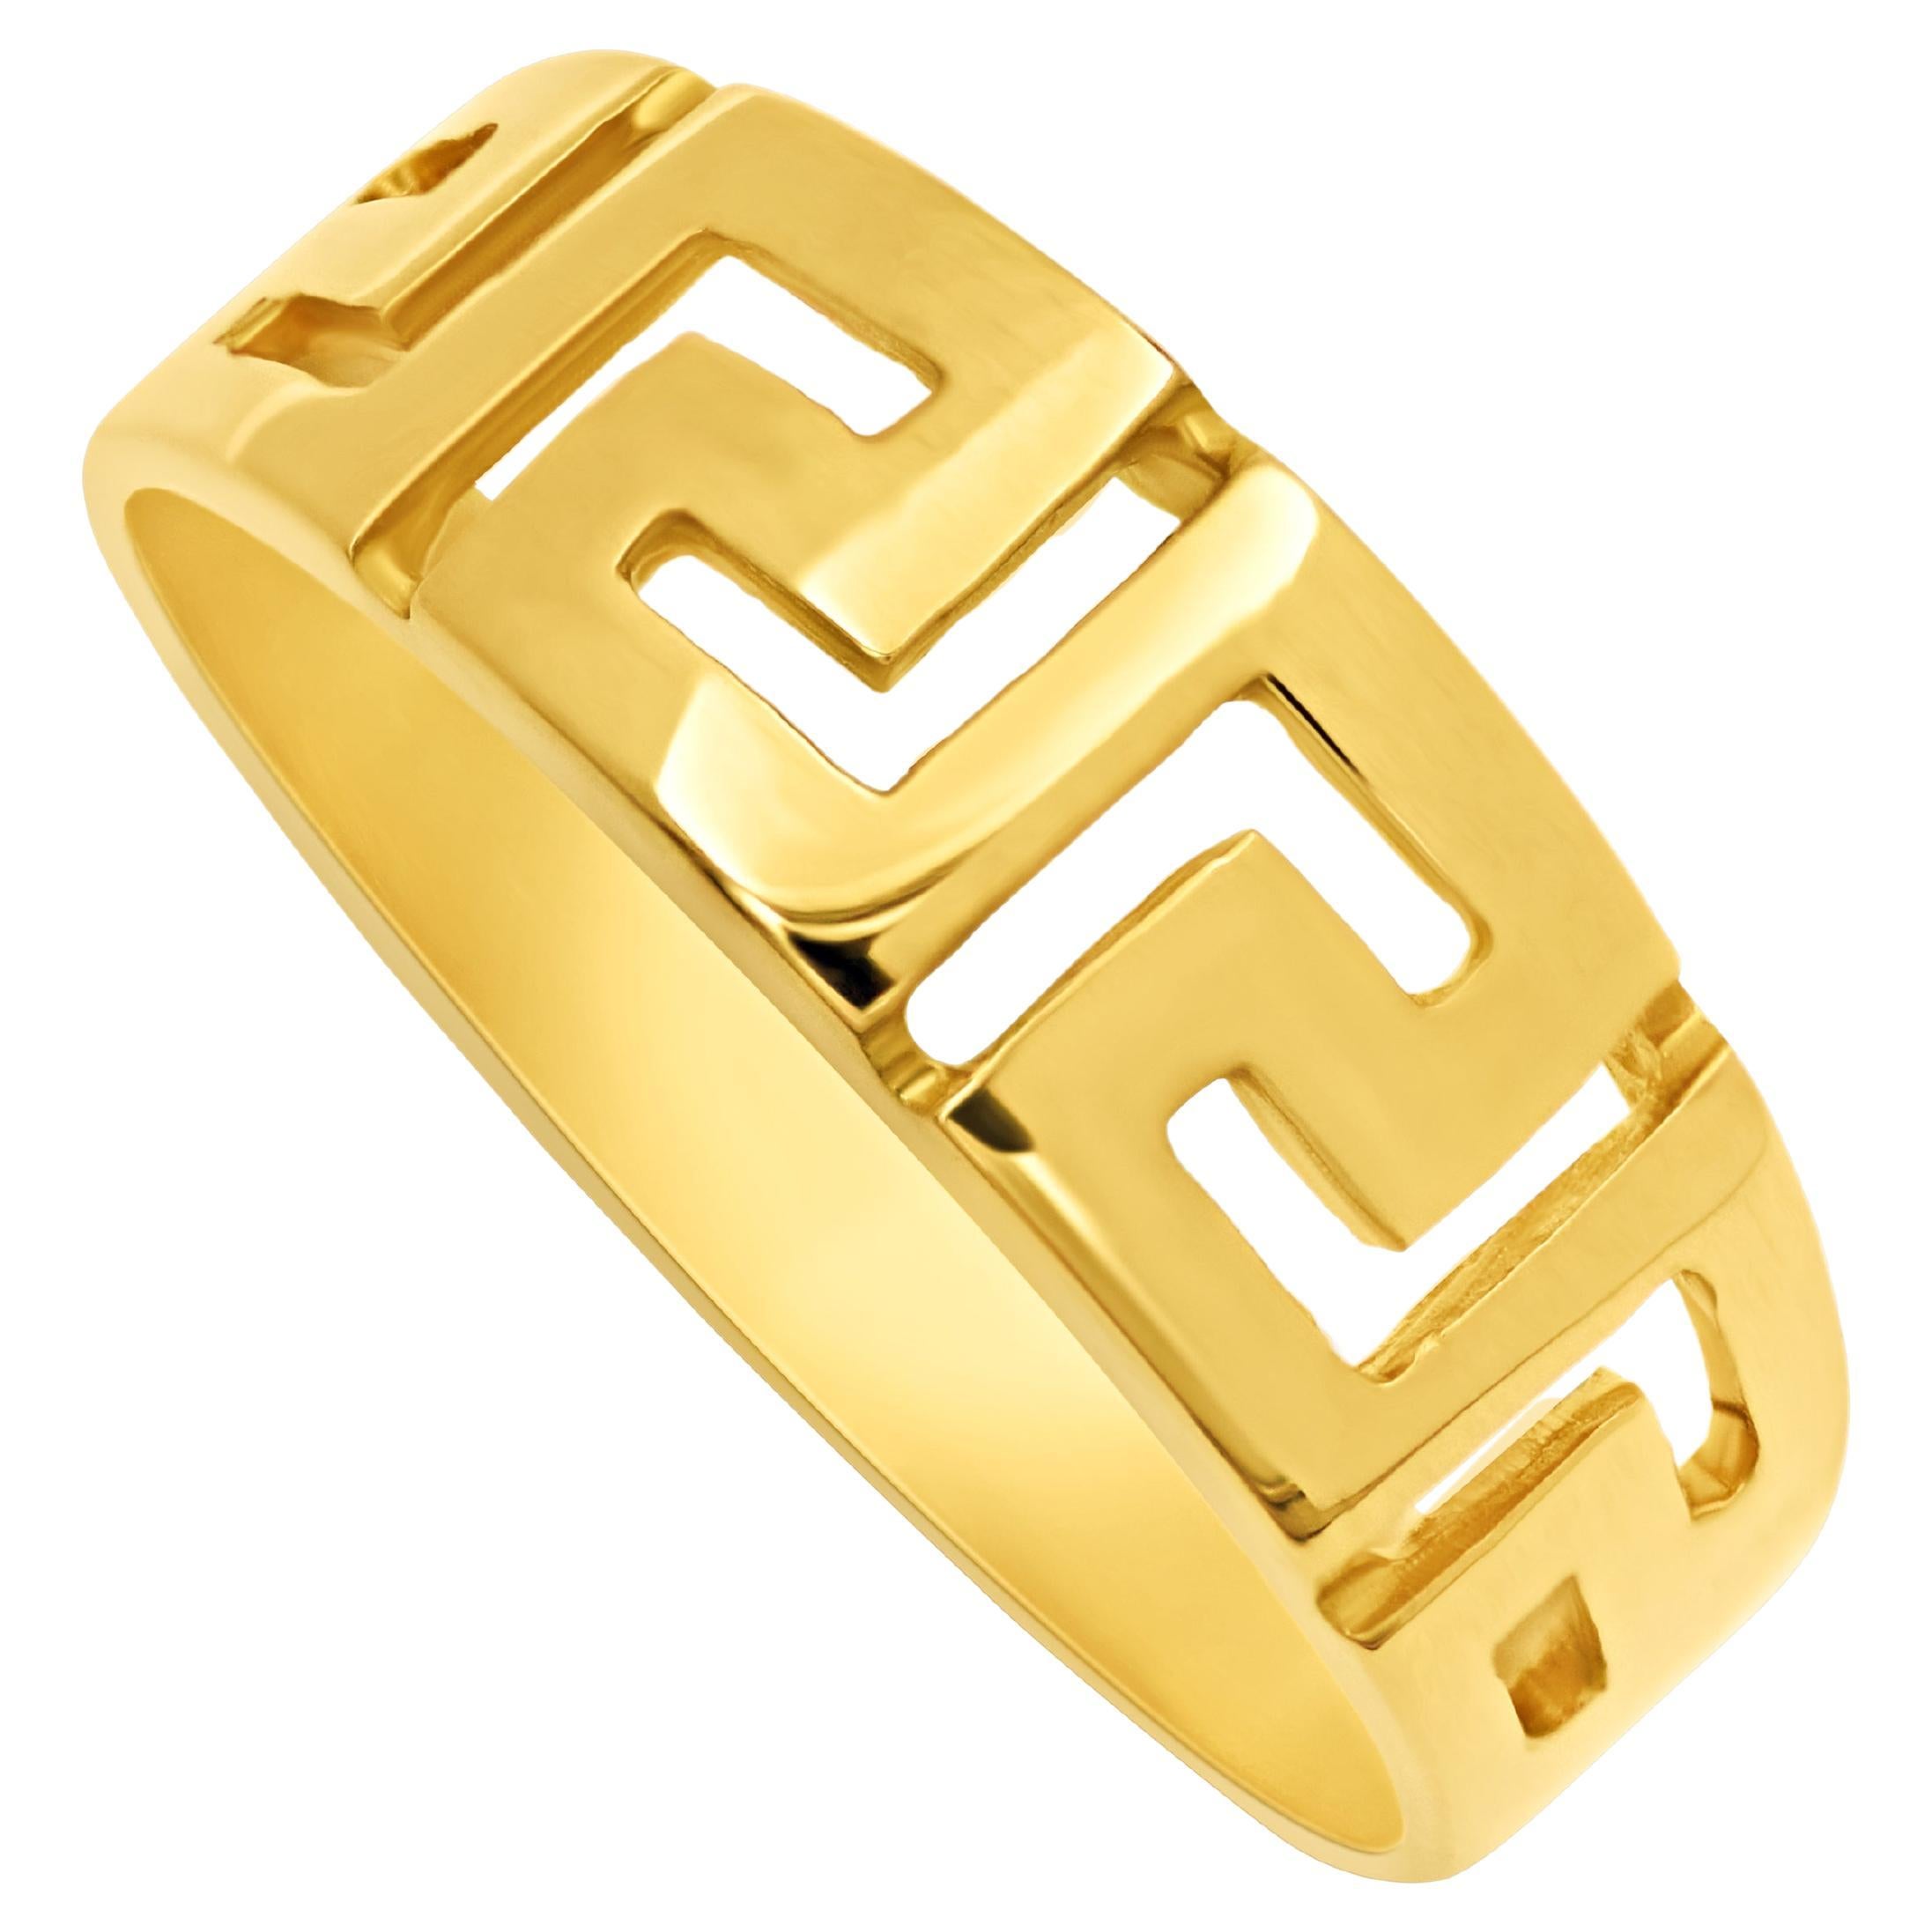 Dimos 18k Yellow Gold Greek Key Ring